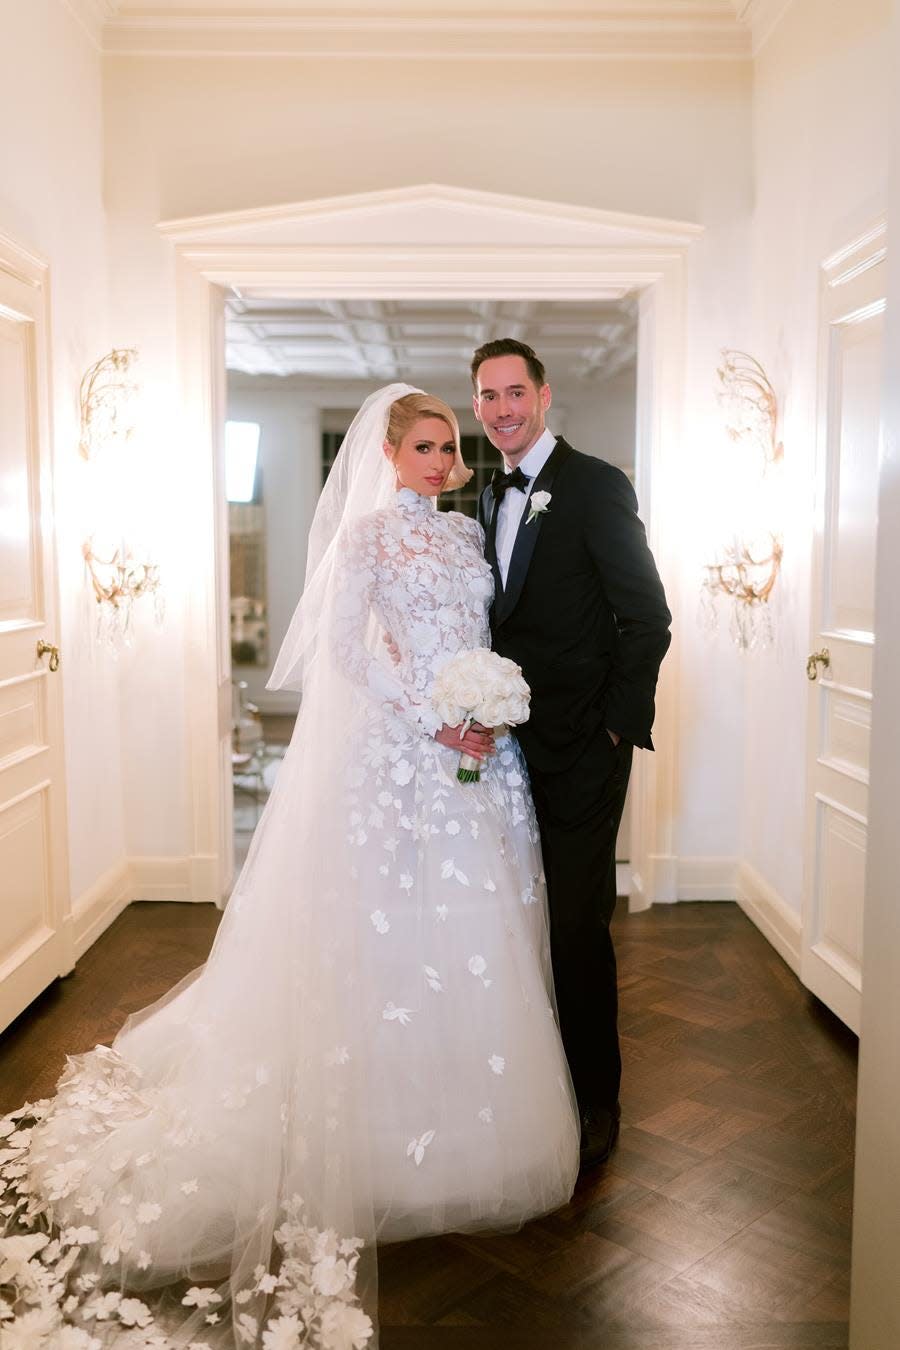 Paris Hilton and Carter Reum pose for their wedding on Nov. 11, 2021.